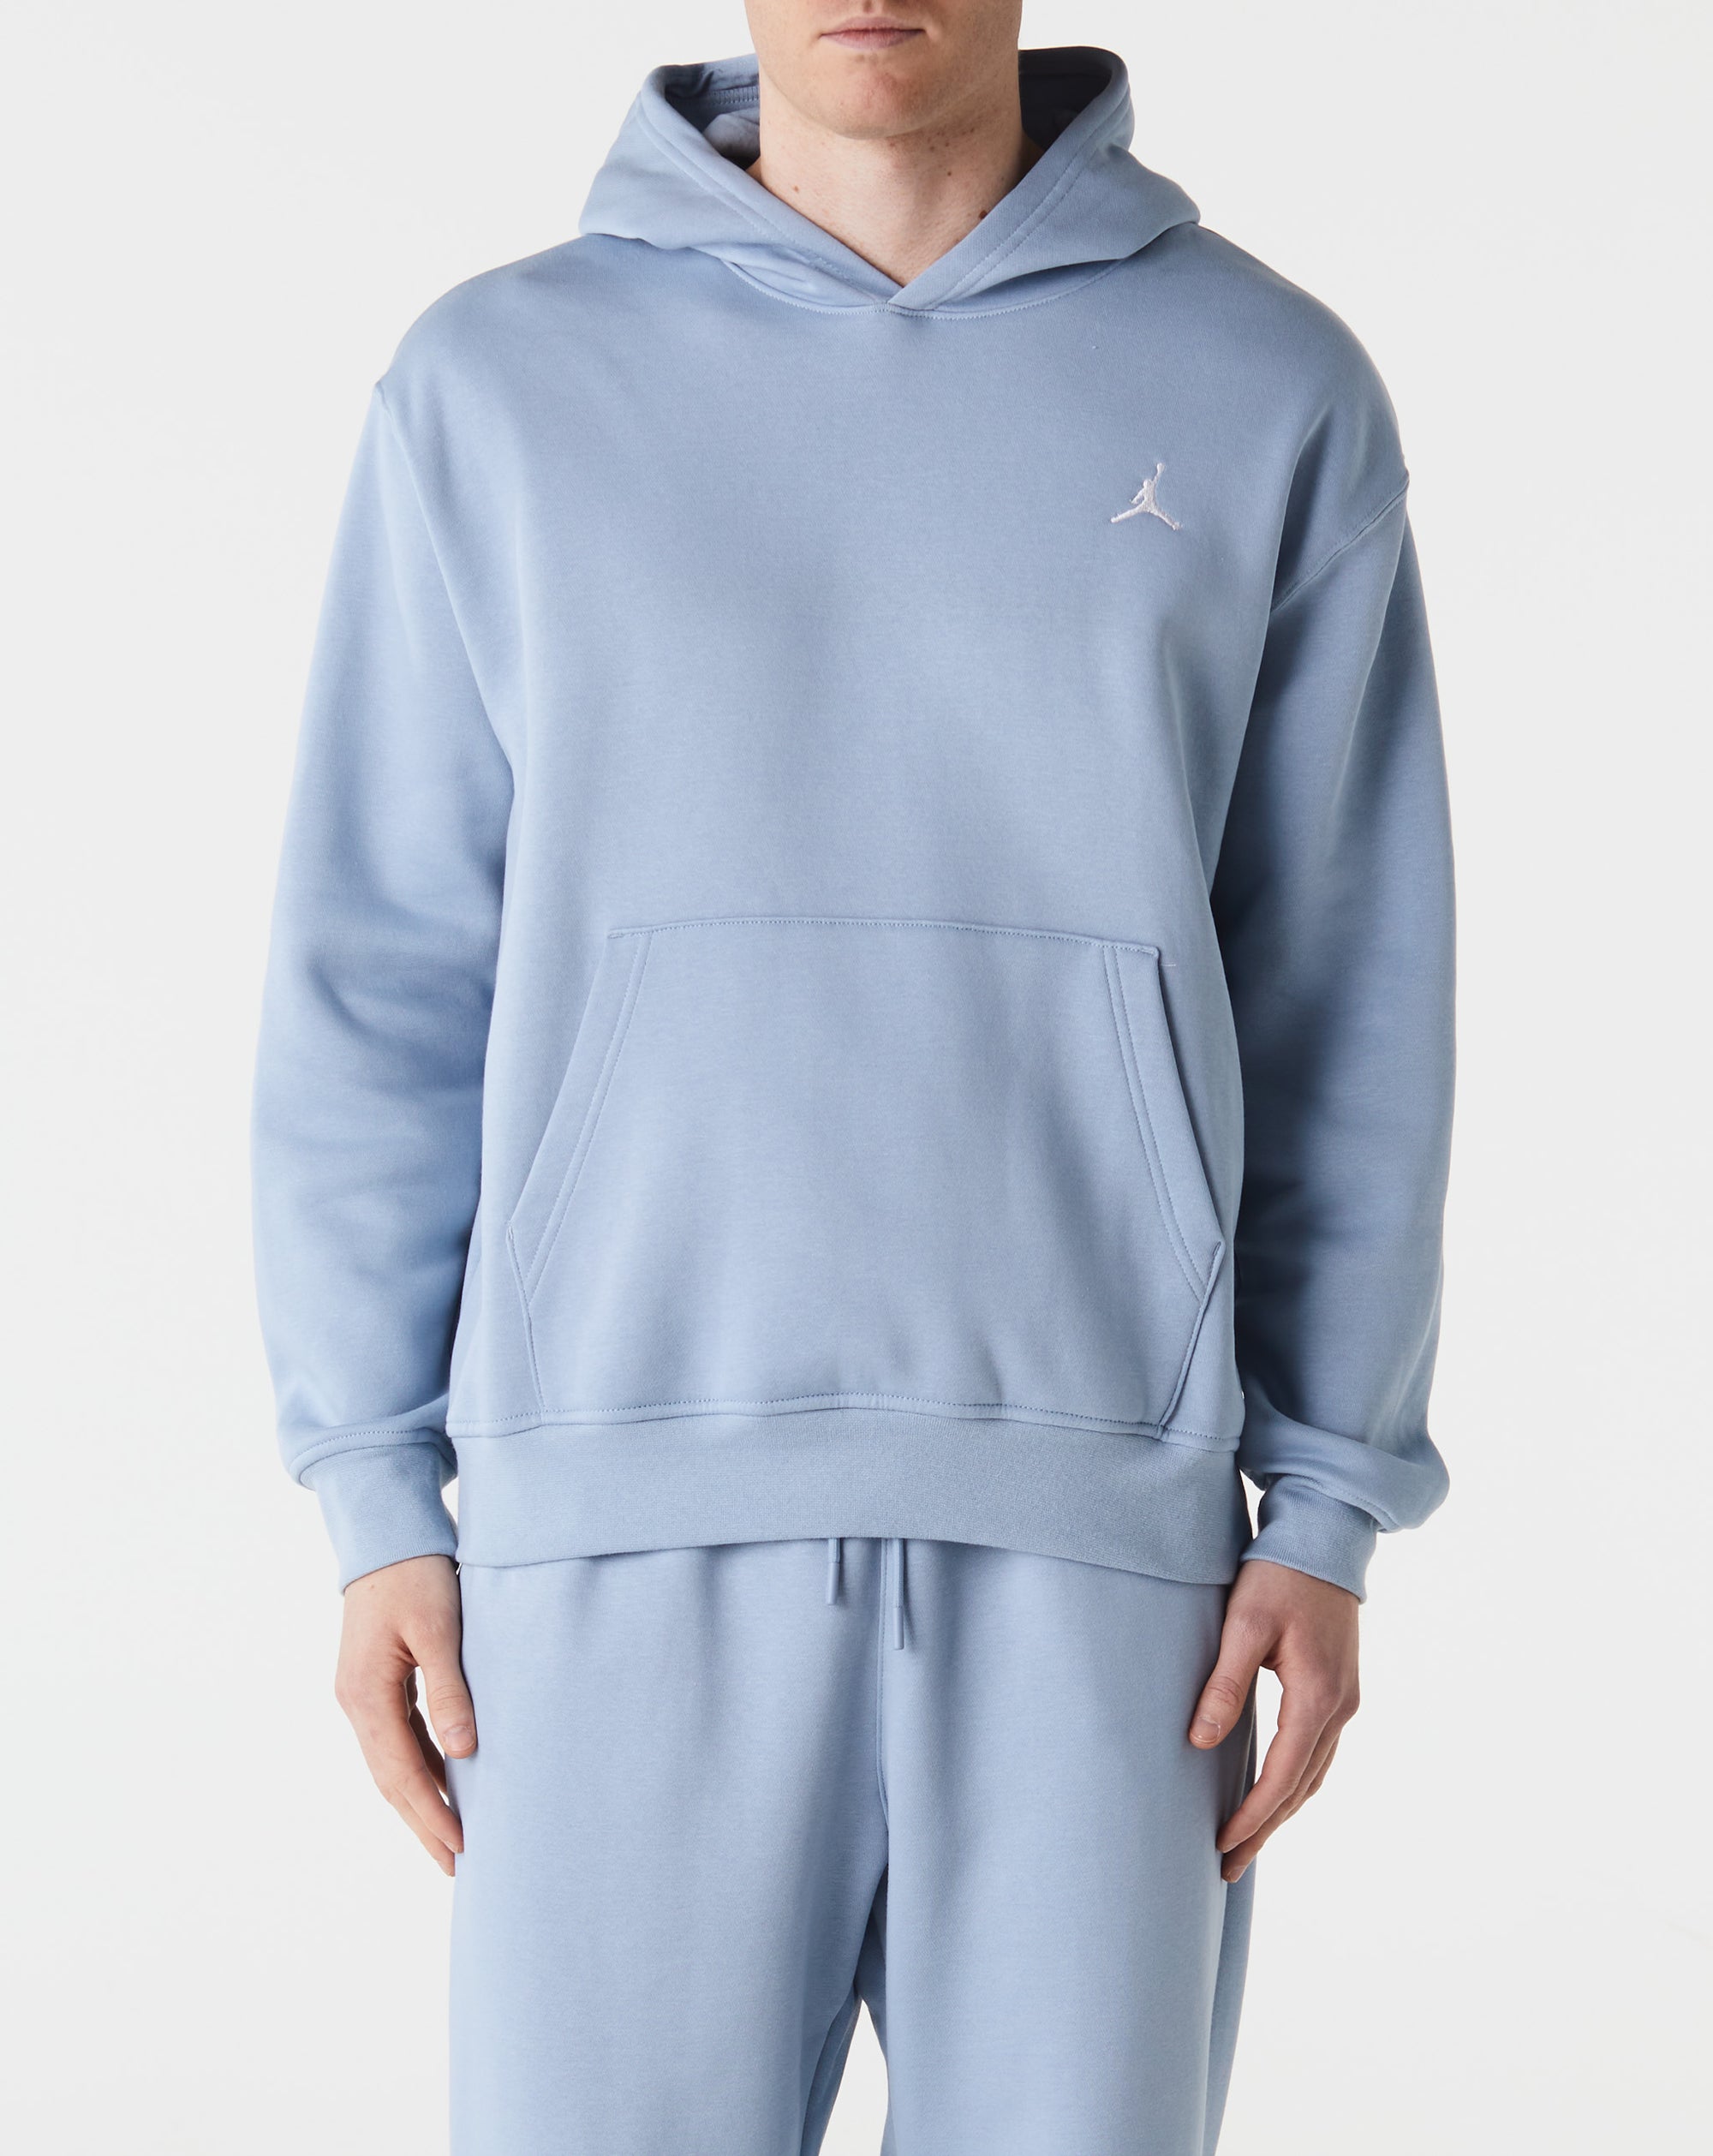 Air Jordan Jordan Essentials Fleece Pullover Hoodie - Rule of Next Apparel